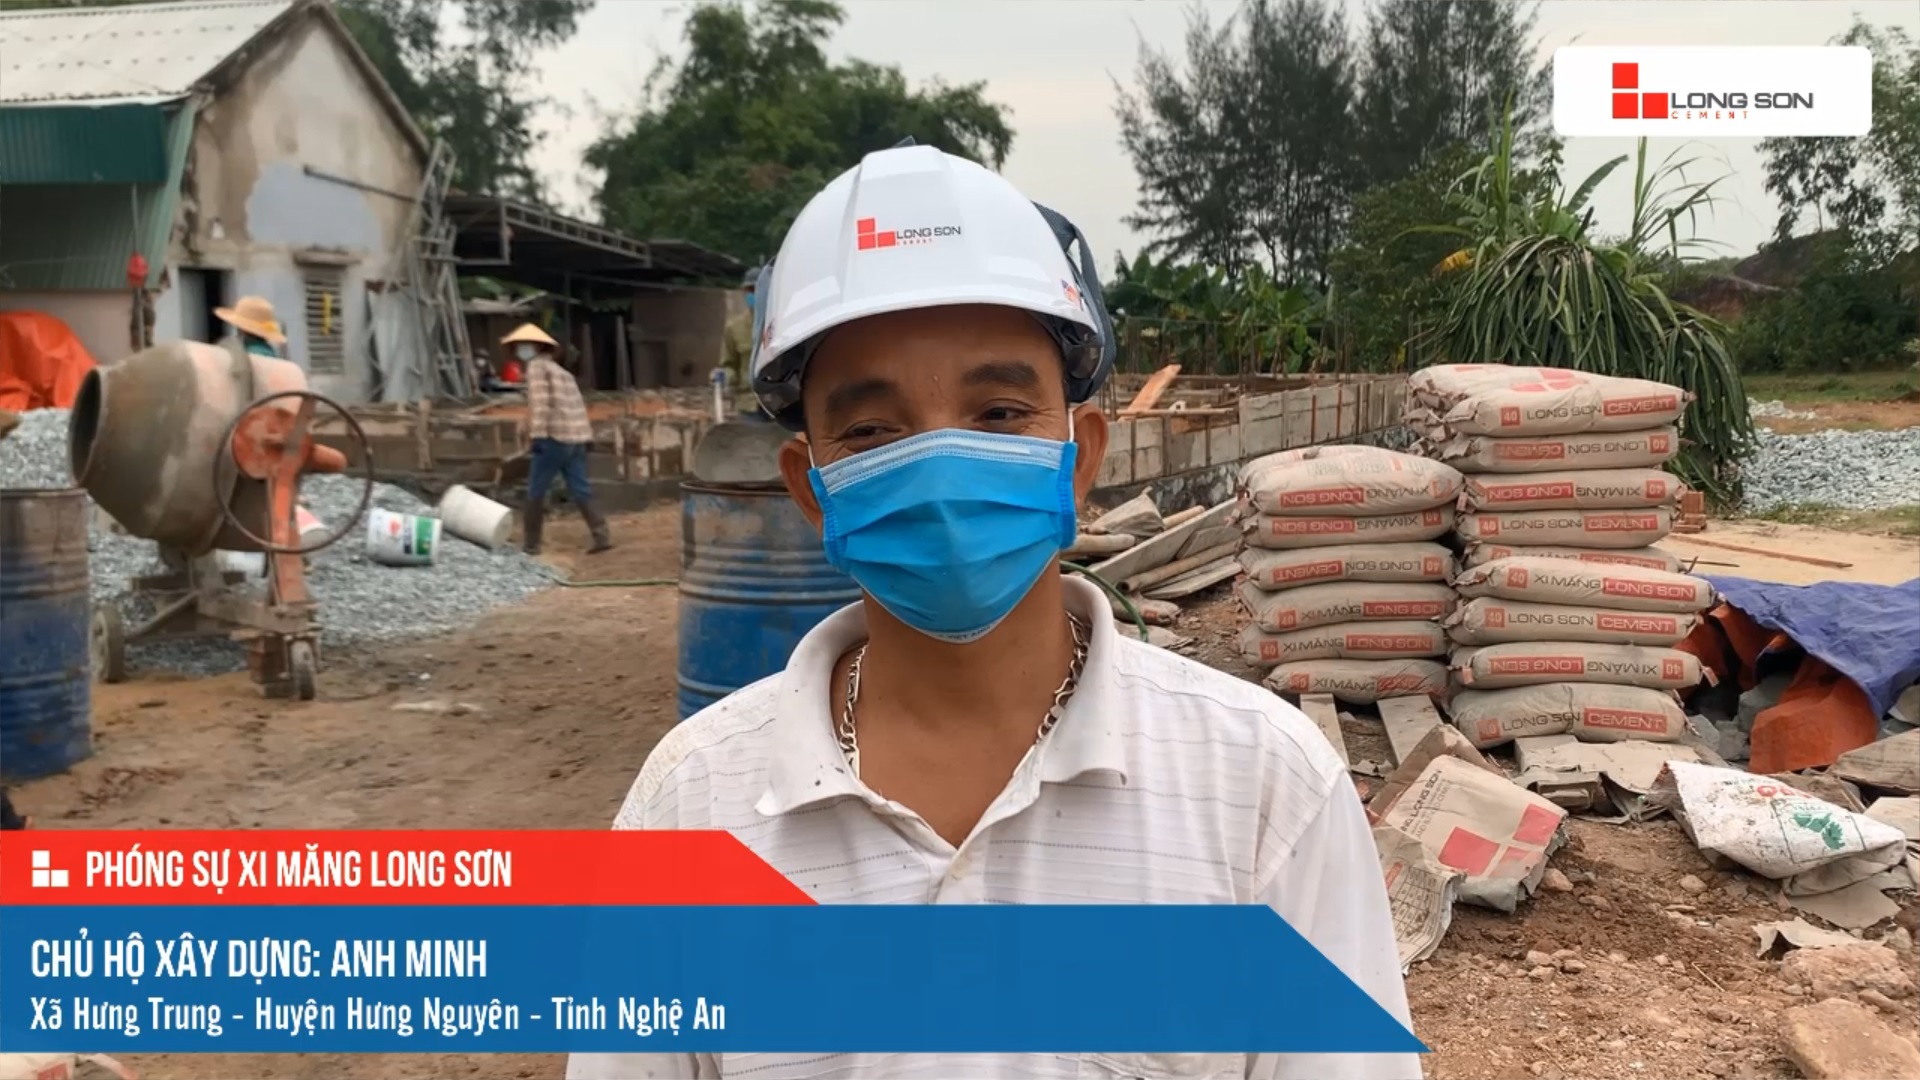 Phóng sự công trình sử dụng xi măng Long Sơn tại Nghệ An ngày 13/11/2021